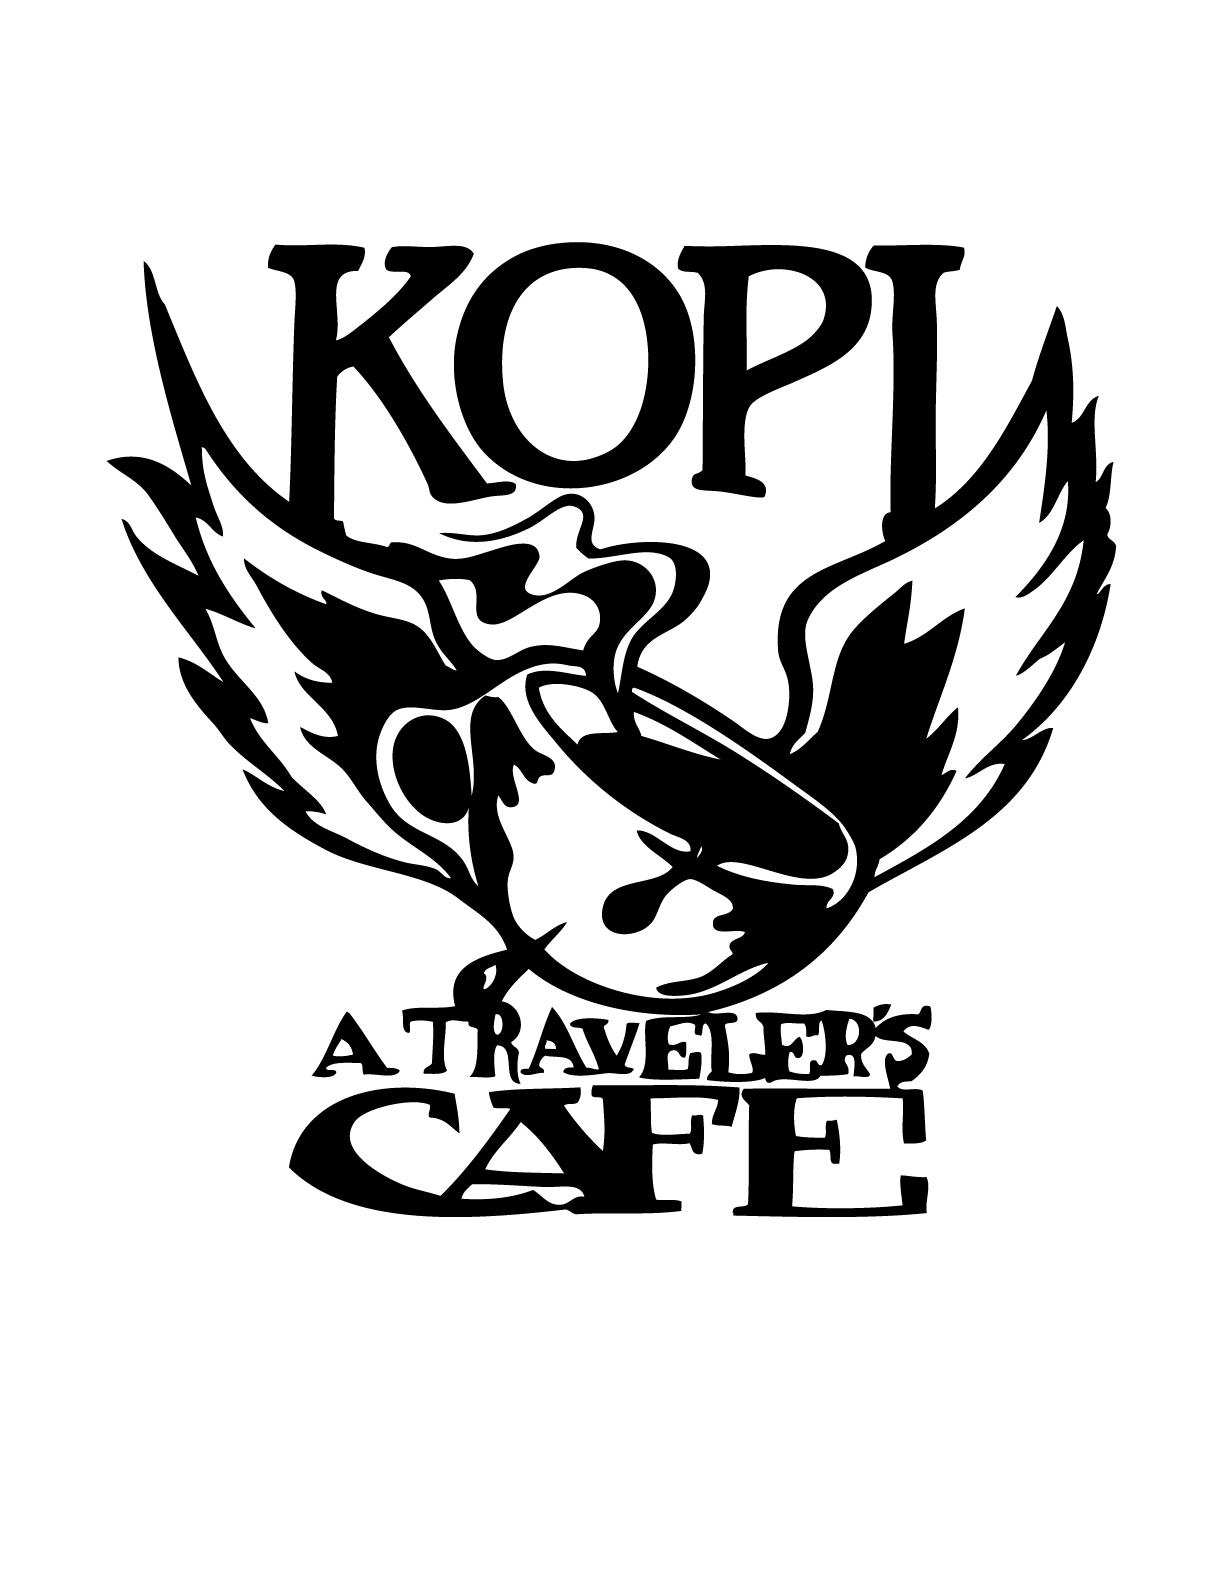  Kopi Cafe